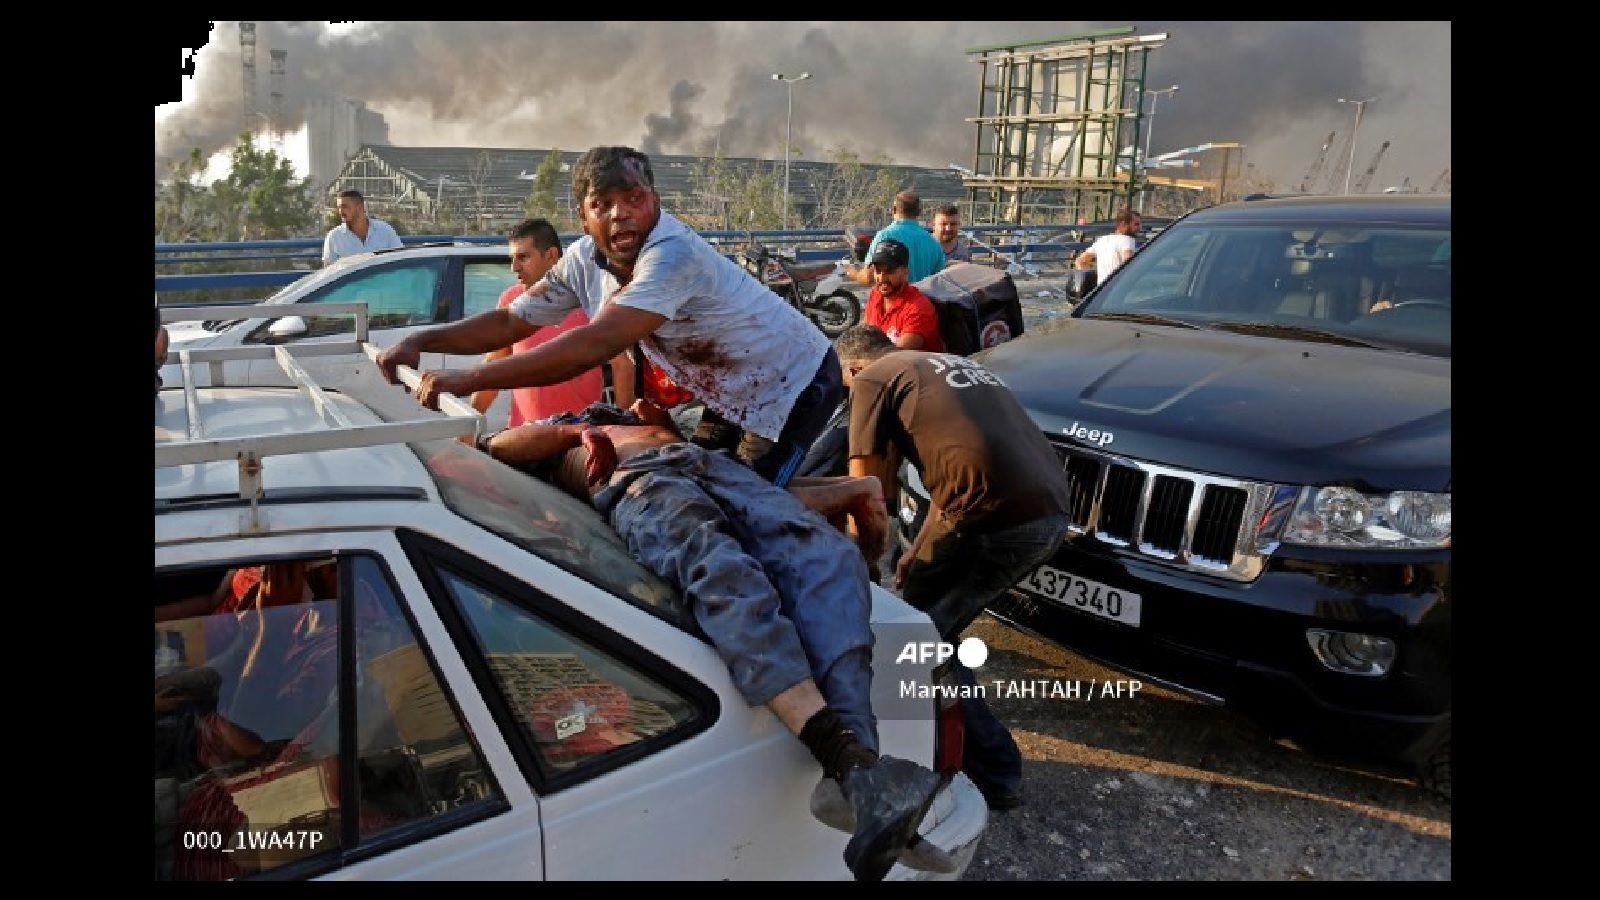 مروان طحطح، من بين صور العام في AFP